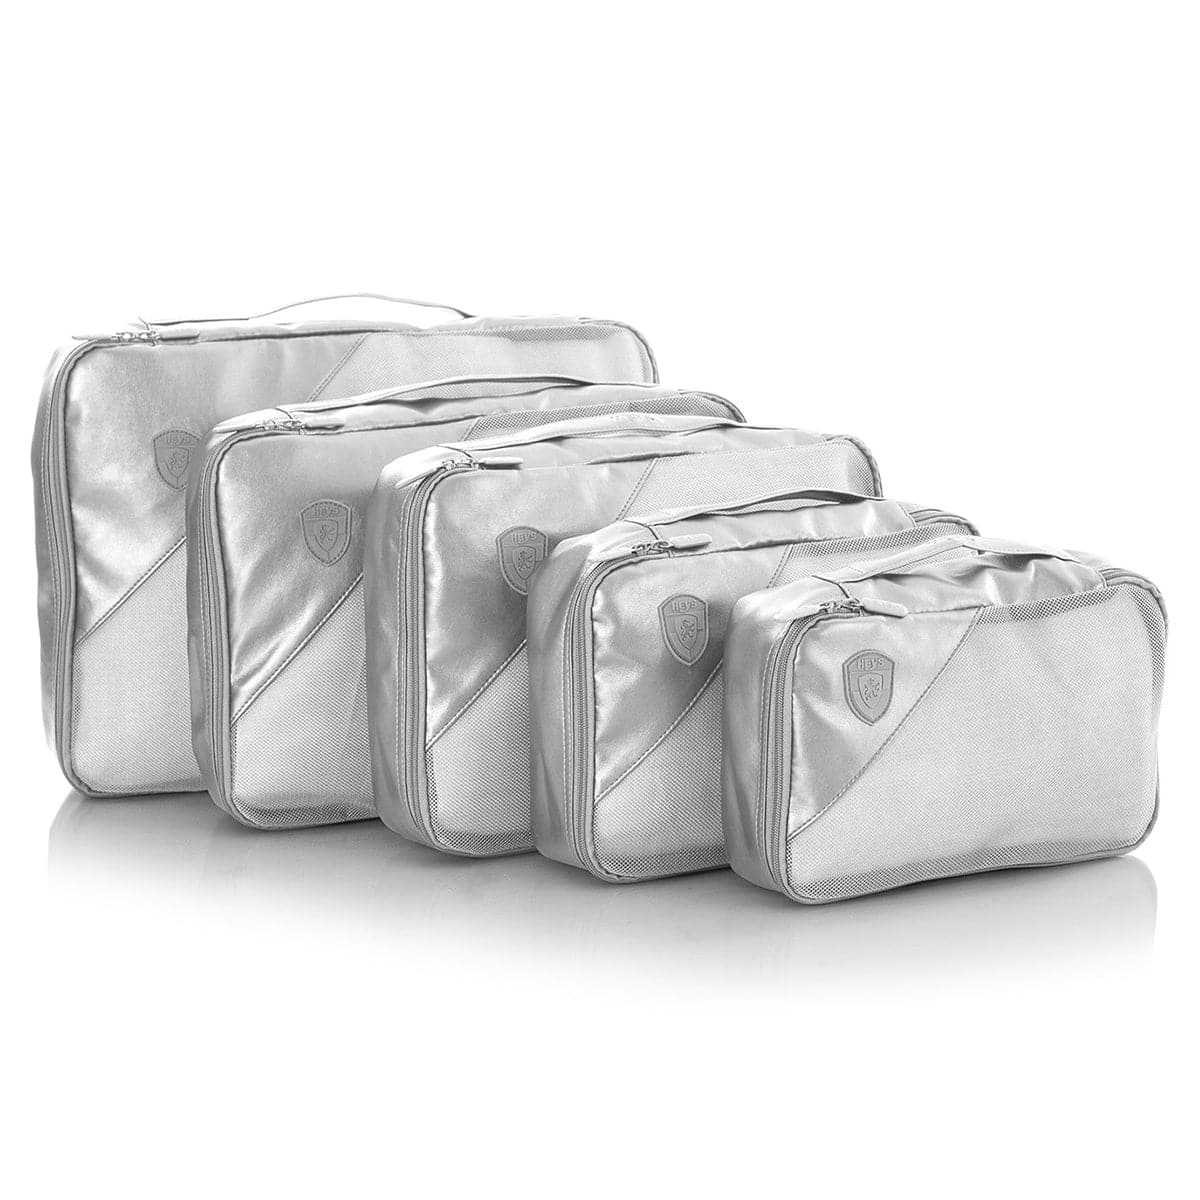 Heys Metallic 5 Piece Packing Cubes Set